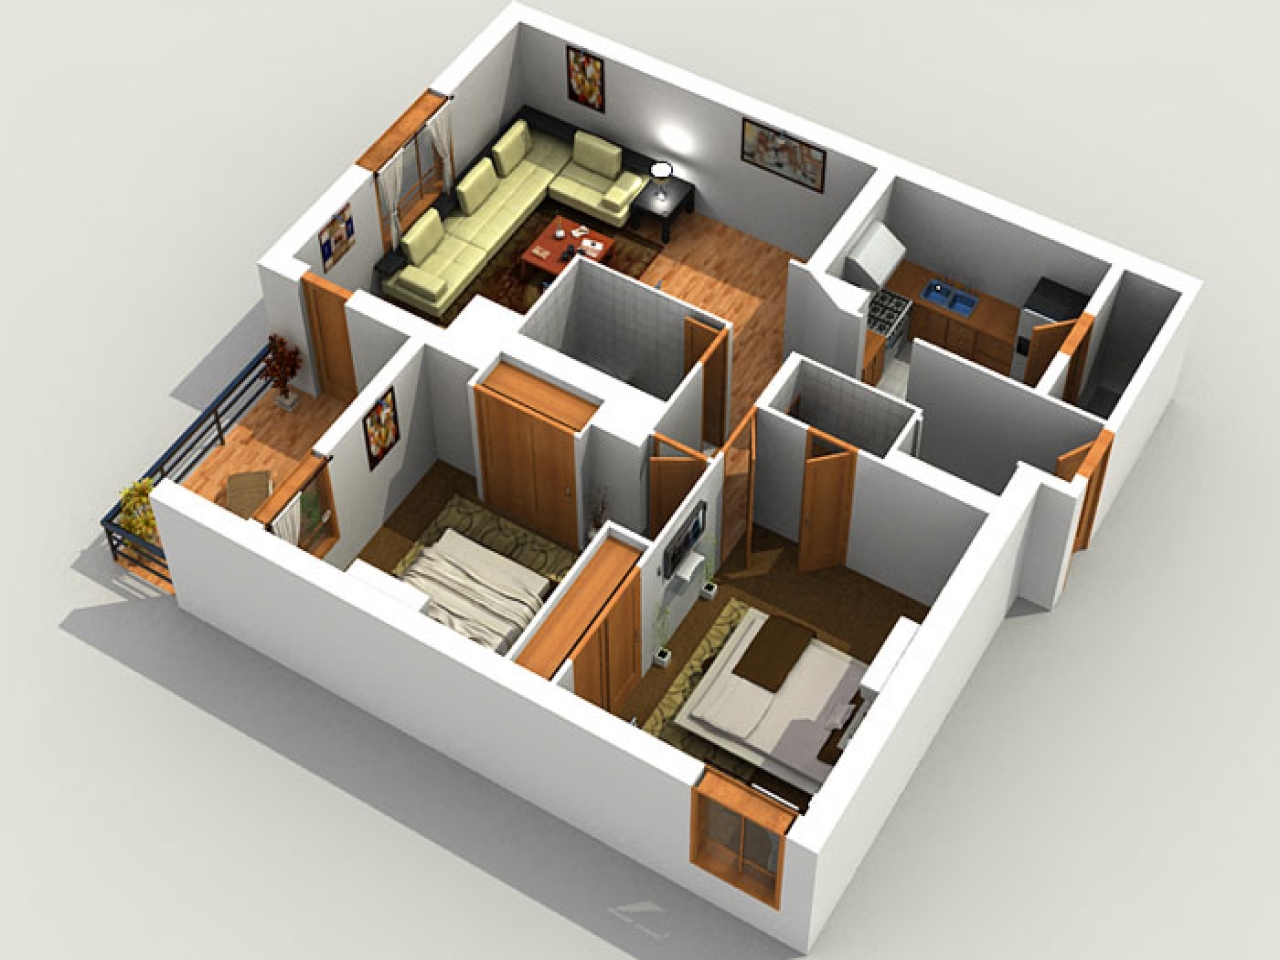 Д3 дом. 3d проектирование интерьера. Проект квартиры. 3d планировка. 3 Д моделирование домов.